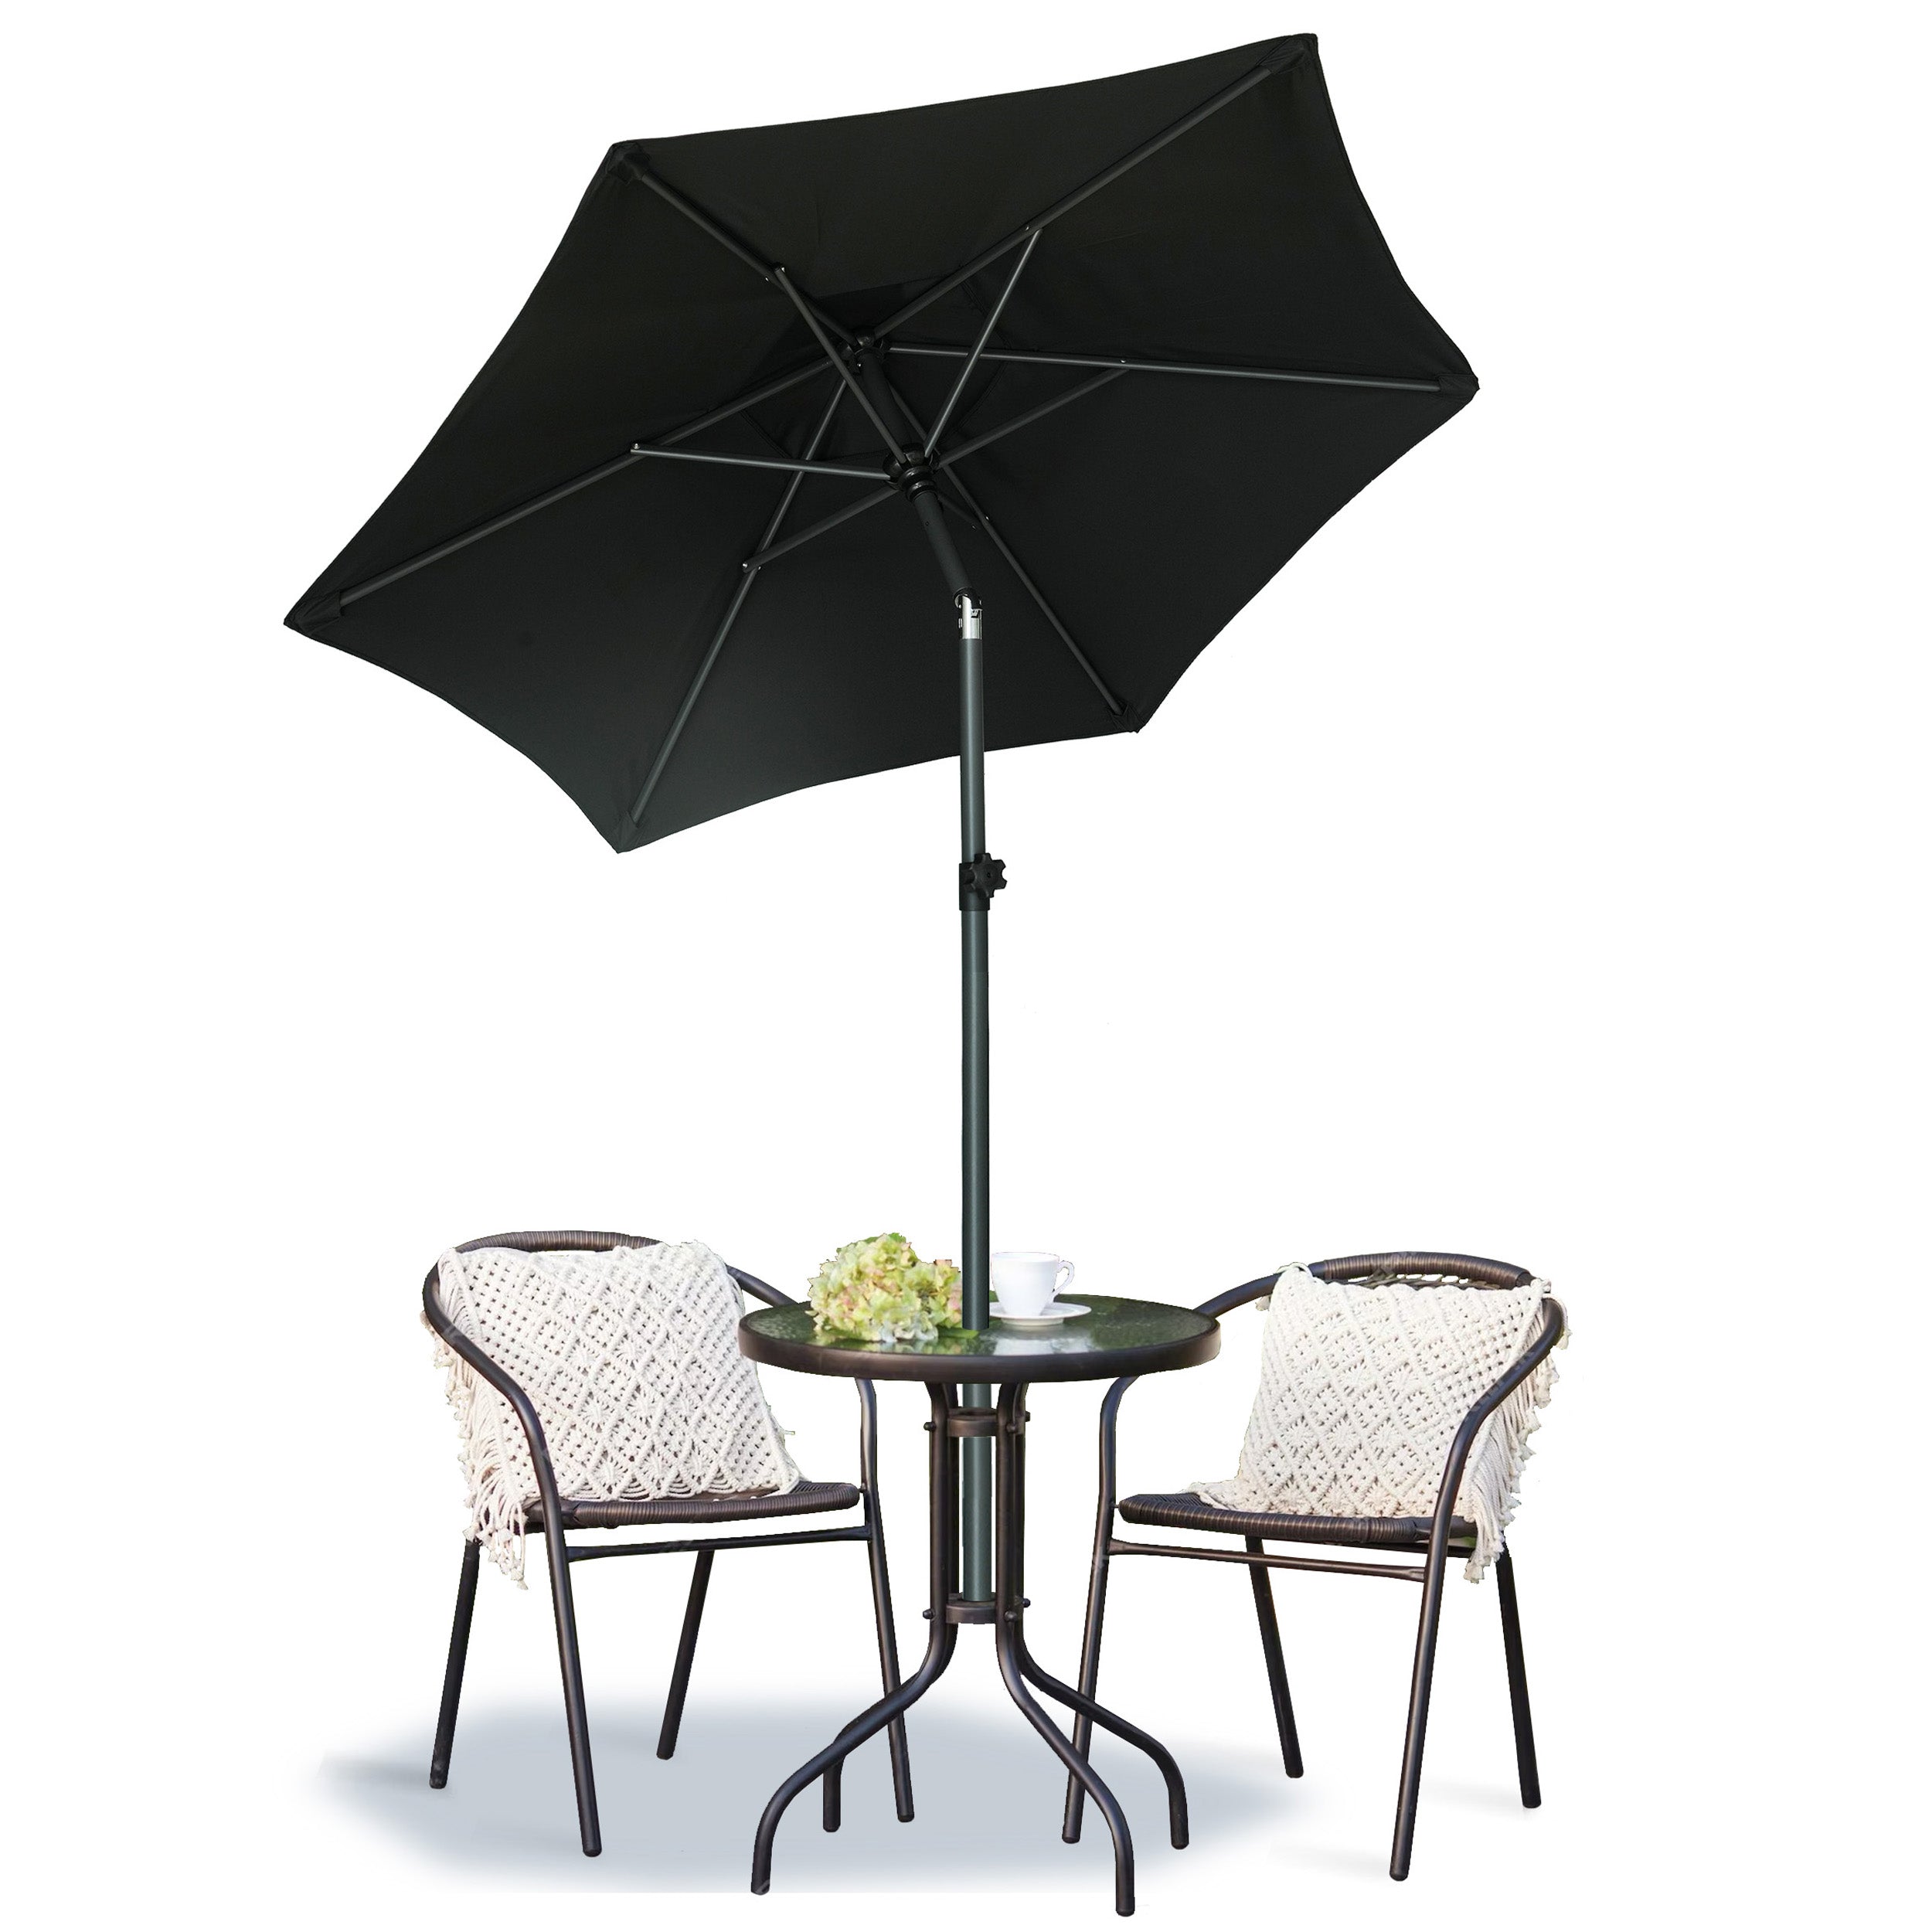 AMMSUN 6ft Patio Umbrella Outdoor Table Umbrellas with Push Button Tilt（Black）